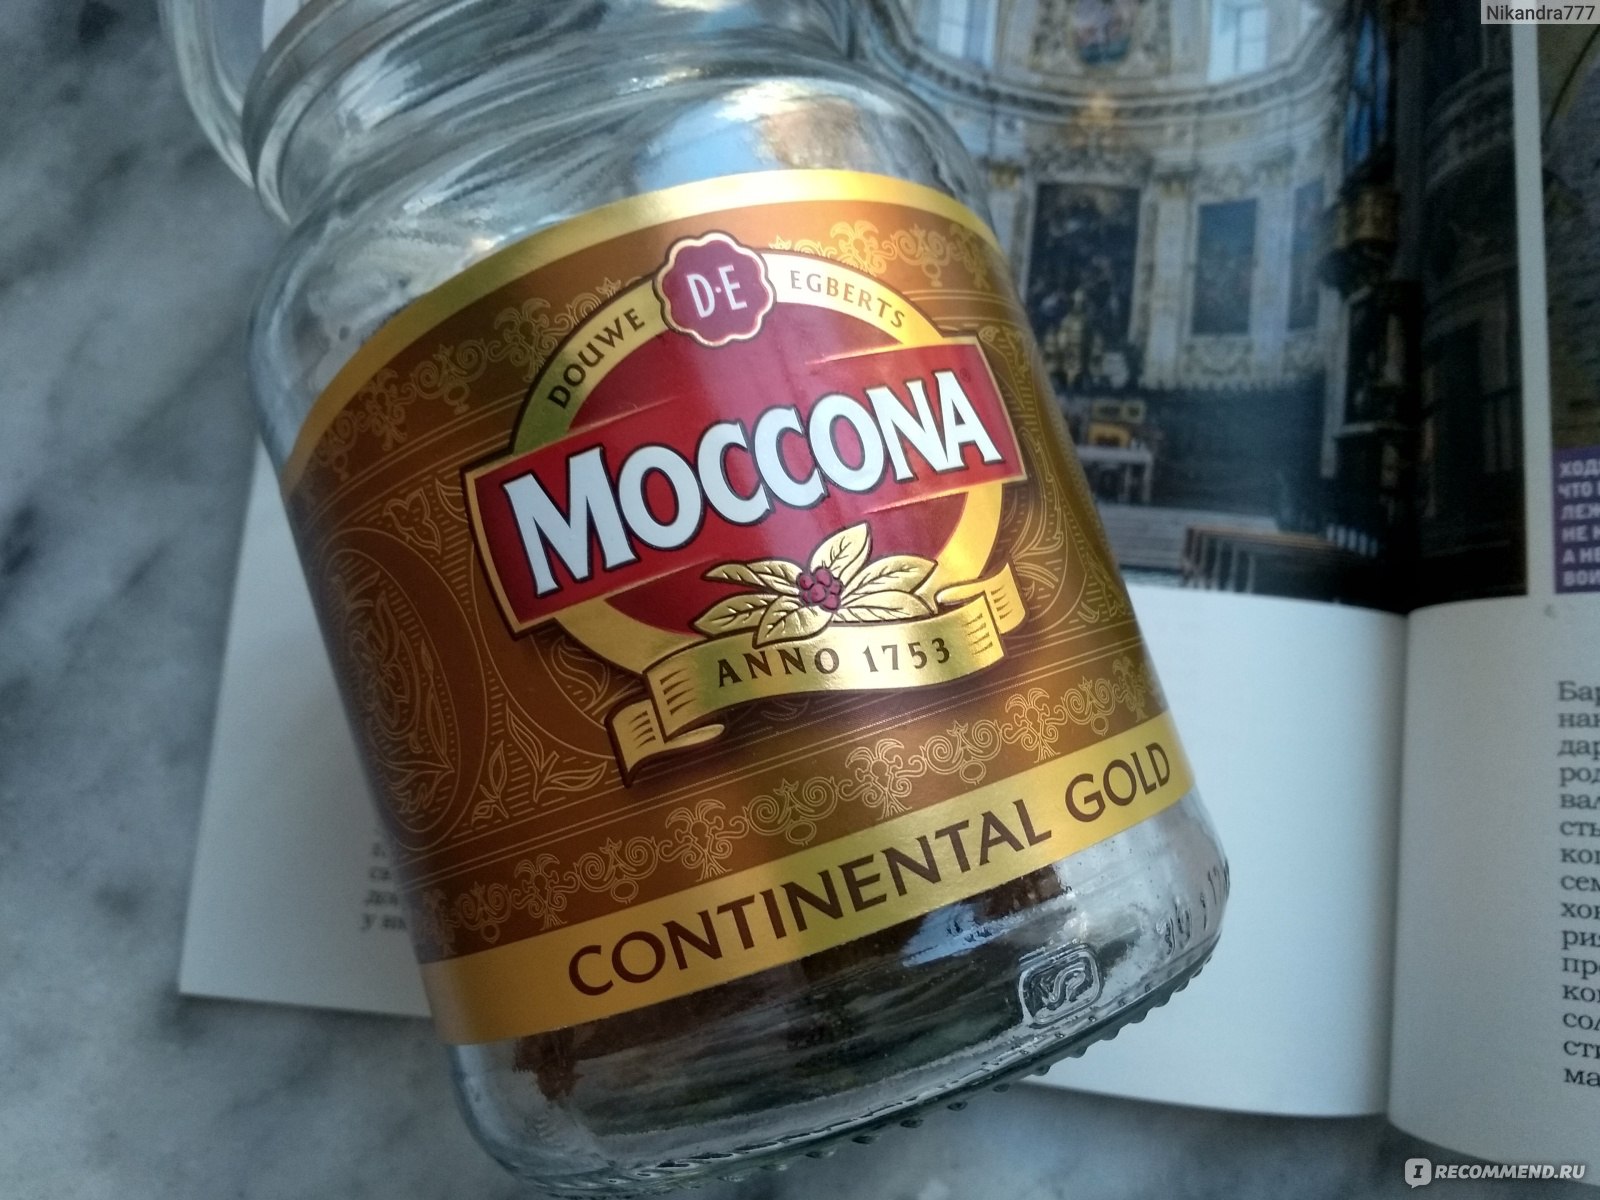 Moccona gold. Moccona Continental Gold. Moccona лого. Кружки Moccona. Moccona Caramel.